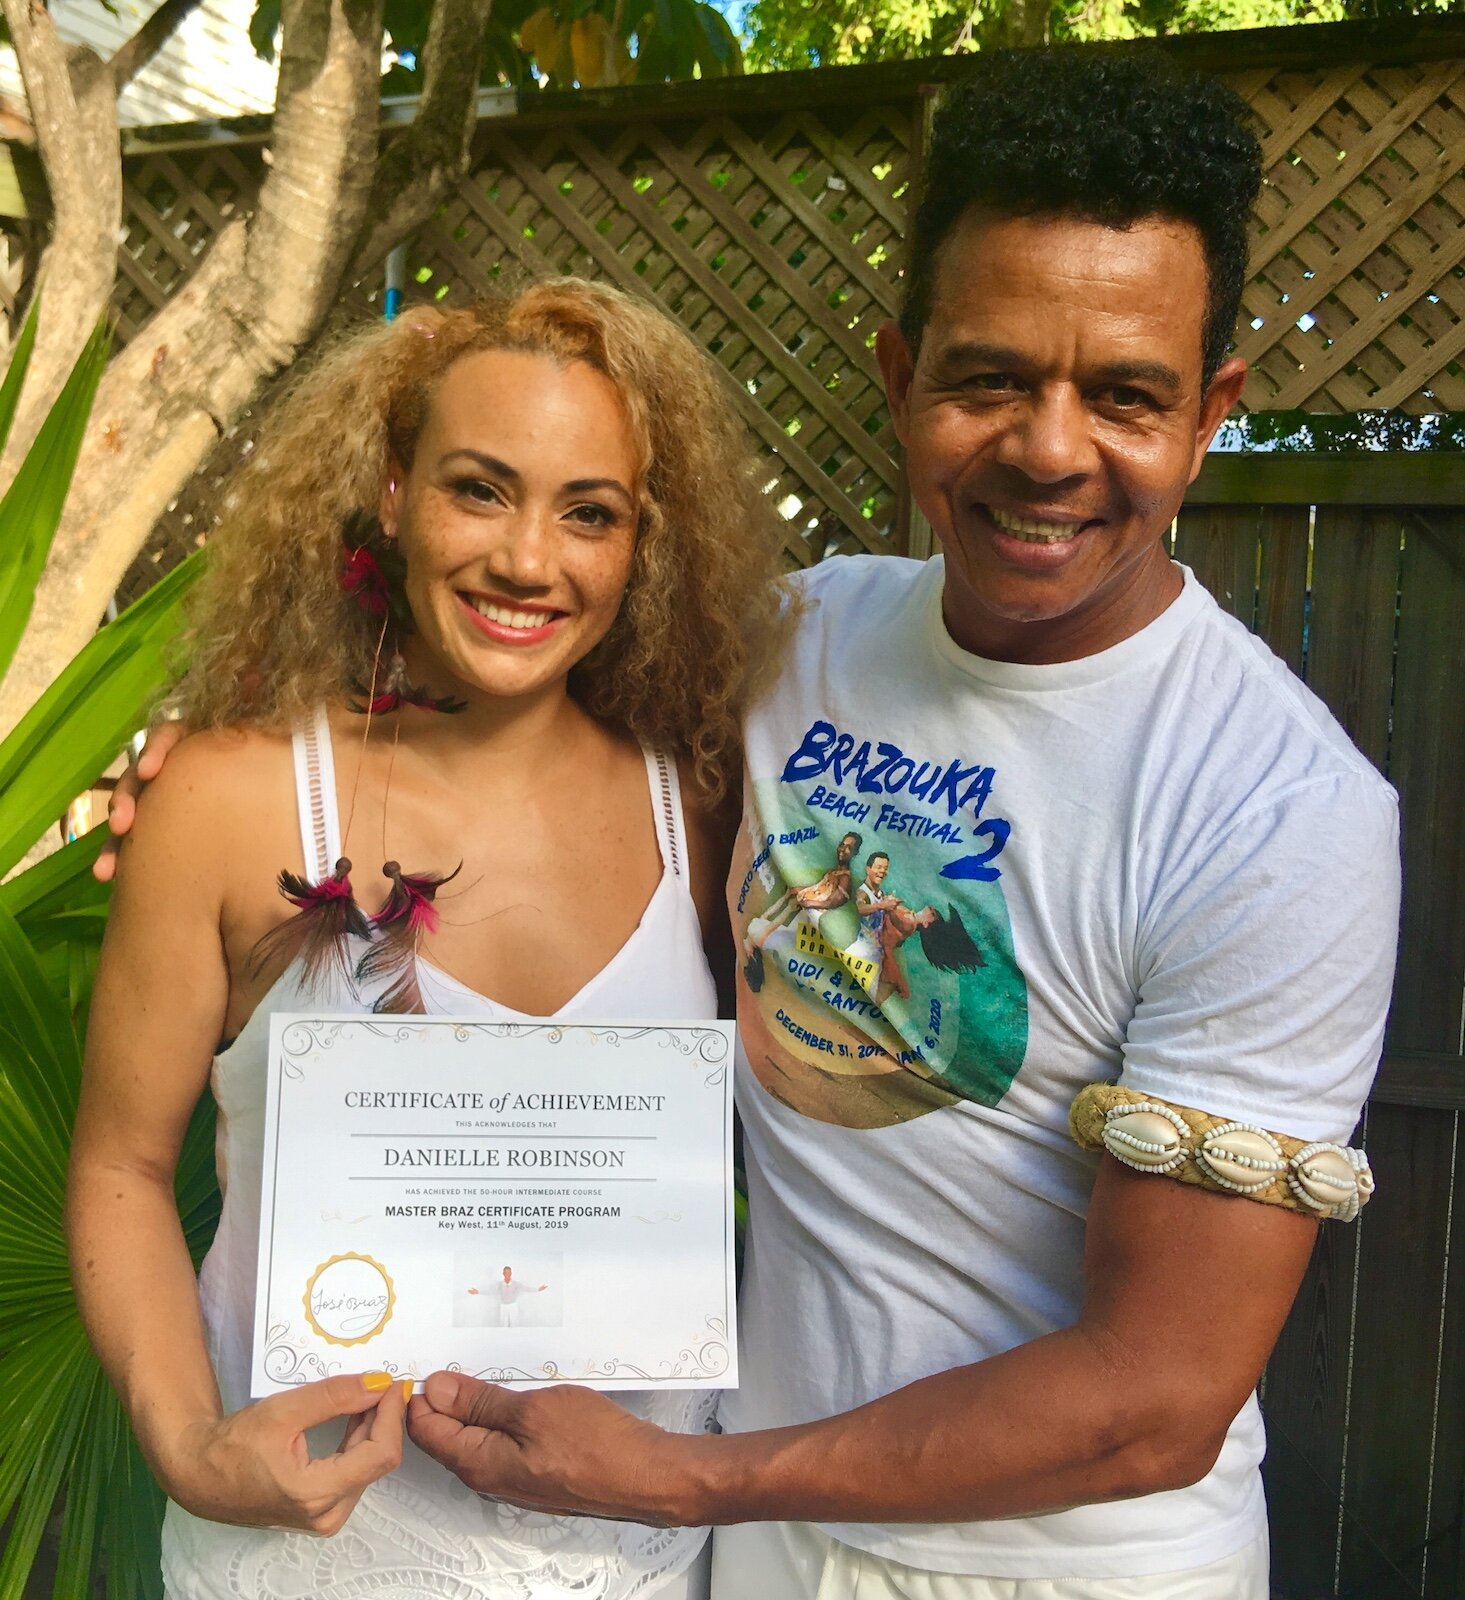 Danielle Robinson Completes Master Braz Certificate Course 2019